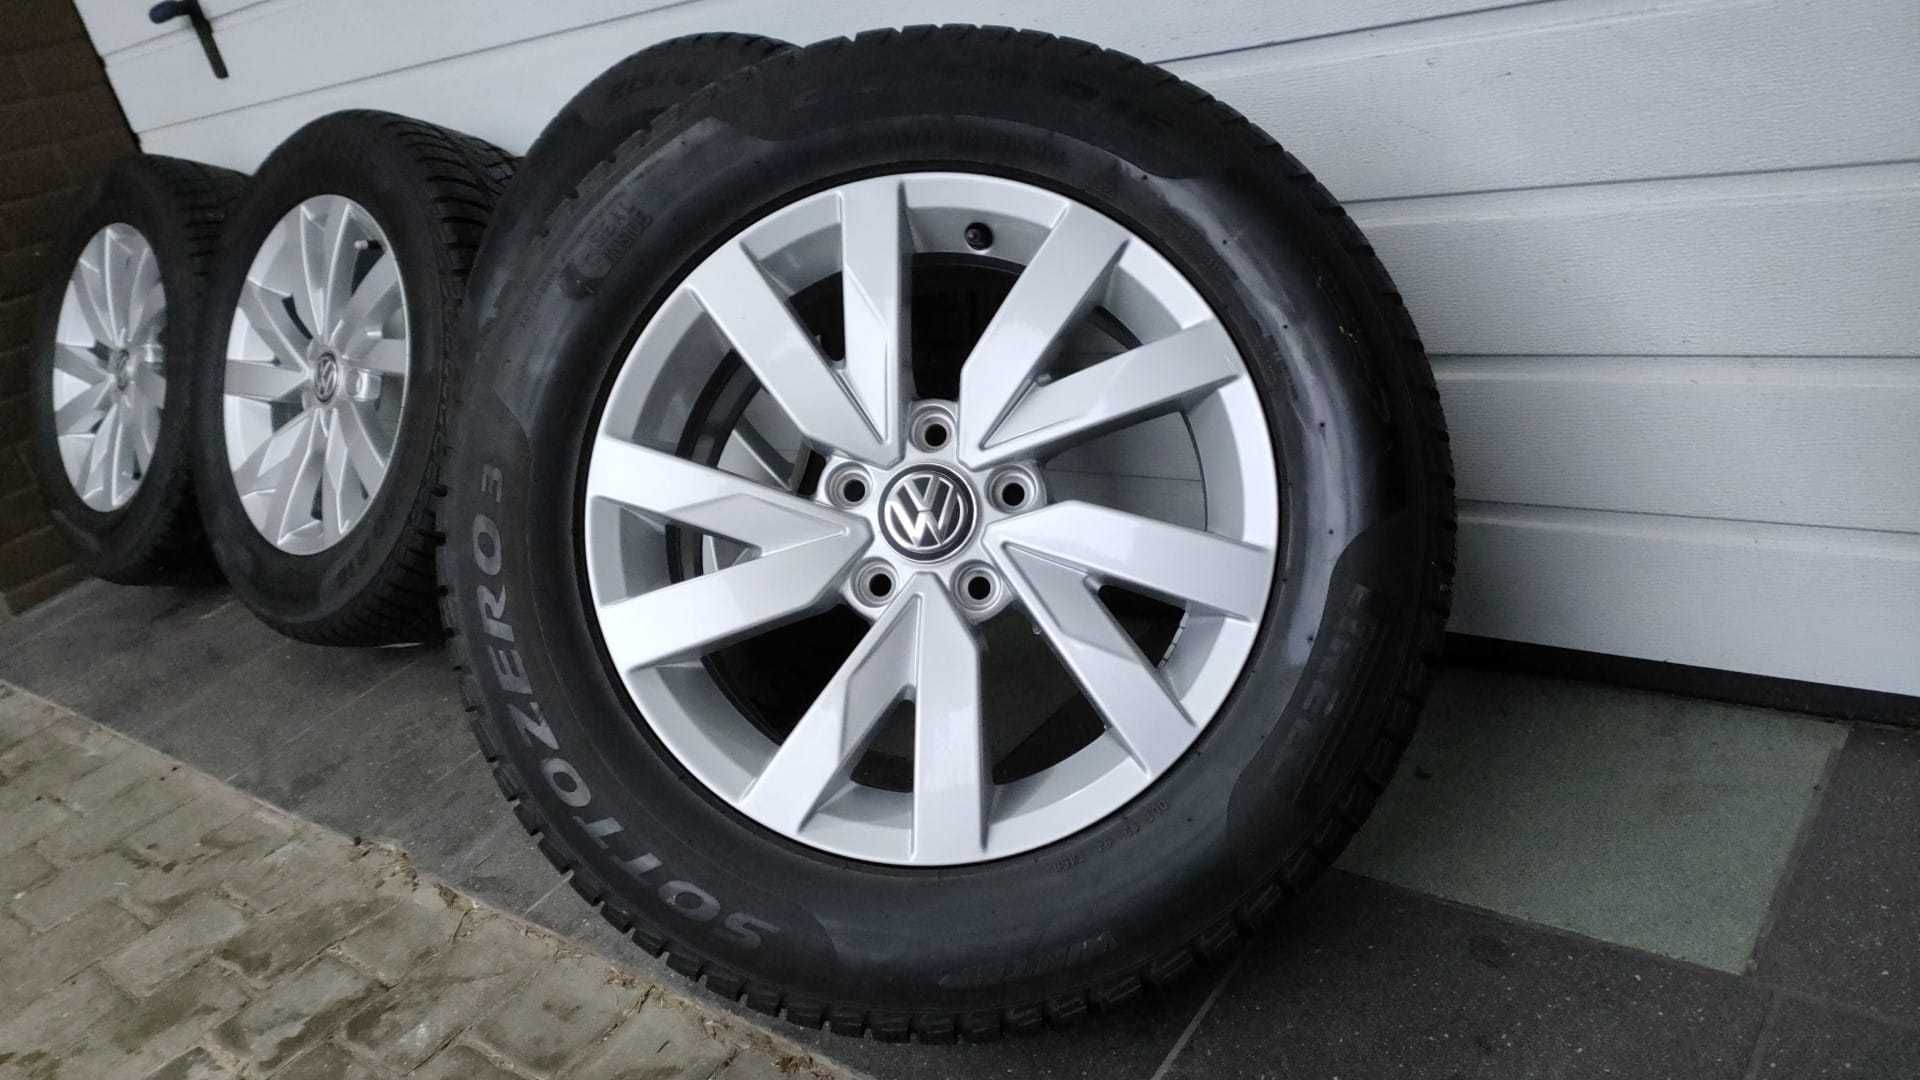 Koła 16' VW Passat B8 5x112 opony zima 215/60/16 Pirelli (OL1546)